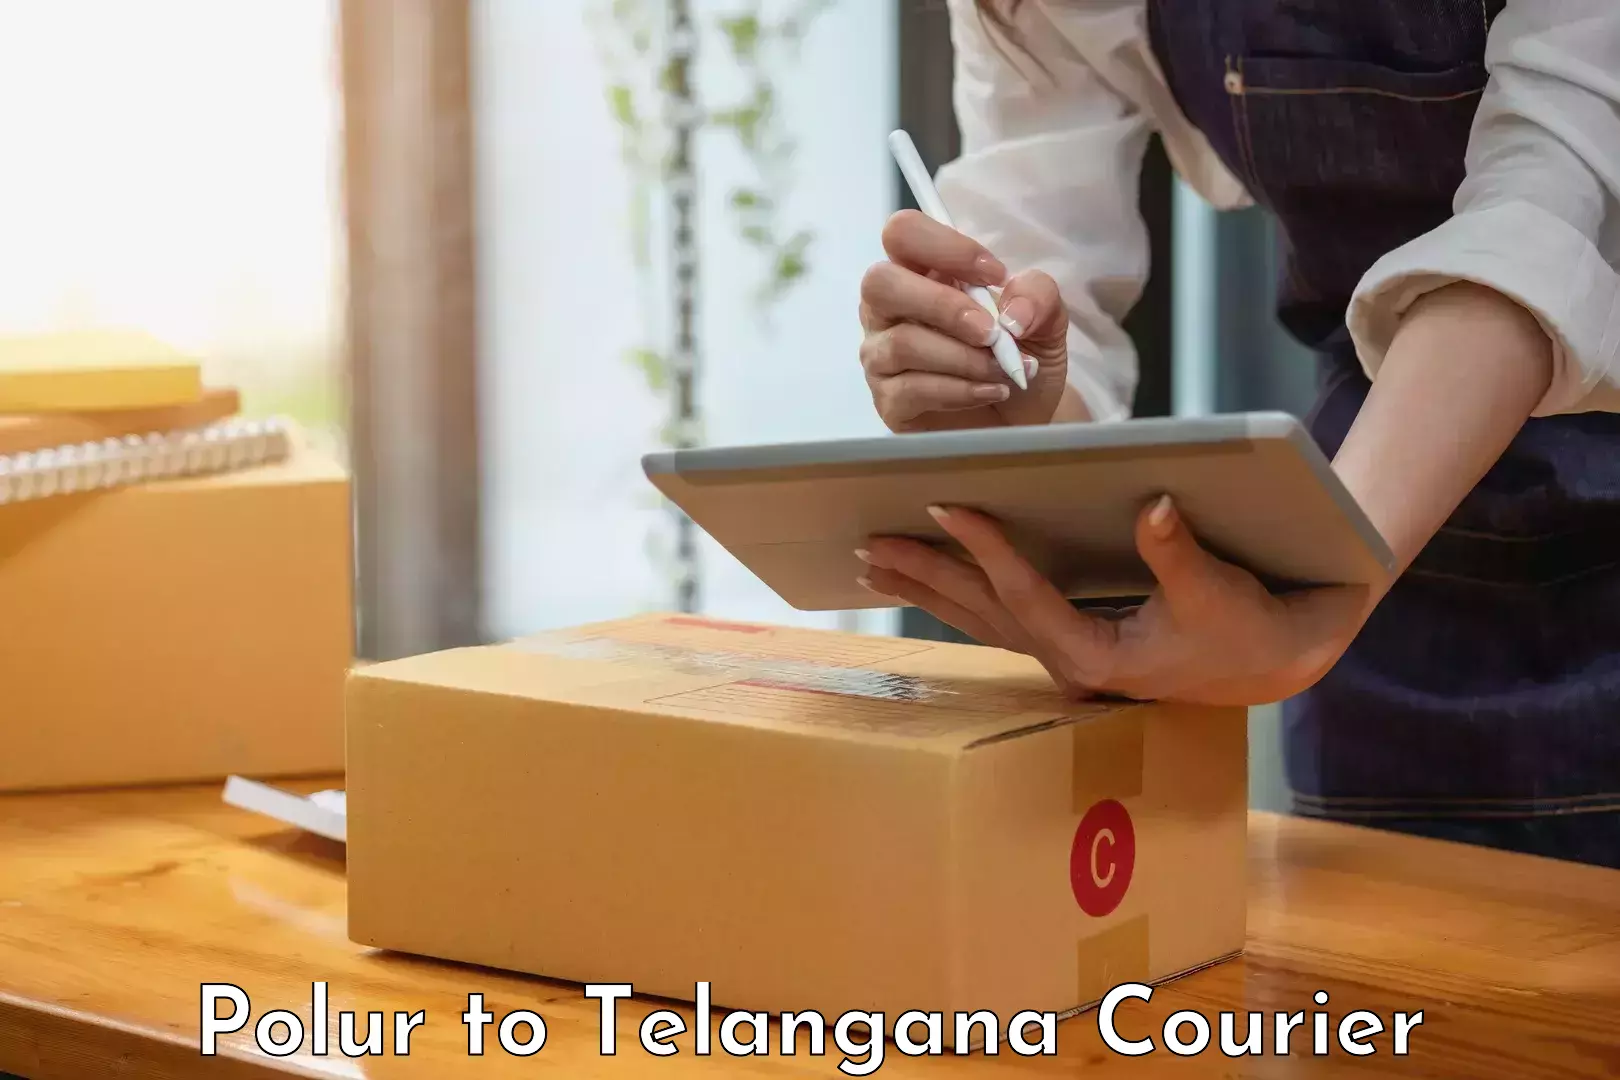 Urban courier service Polur to Telangana